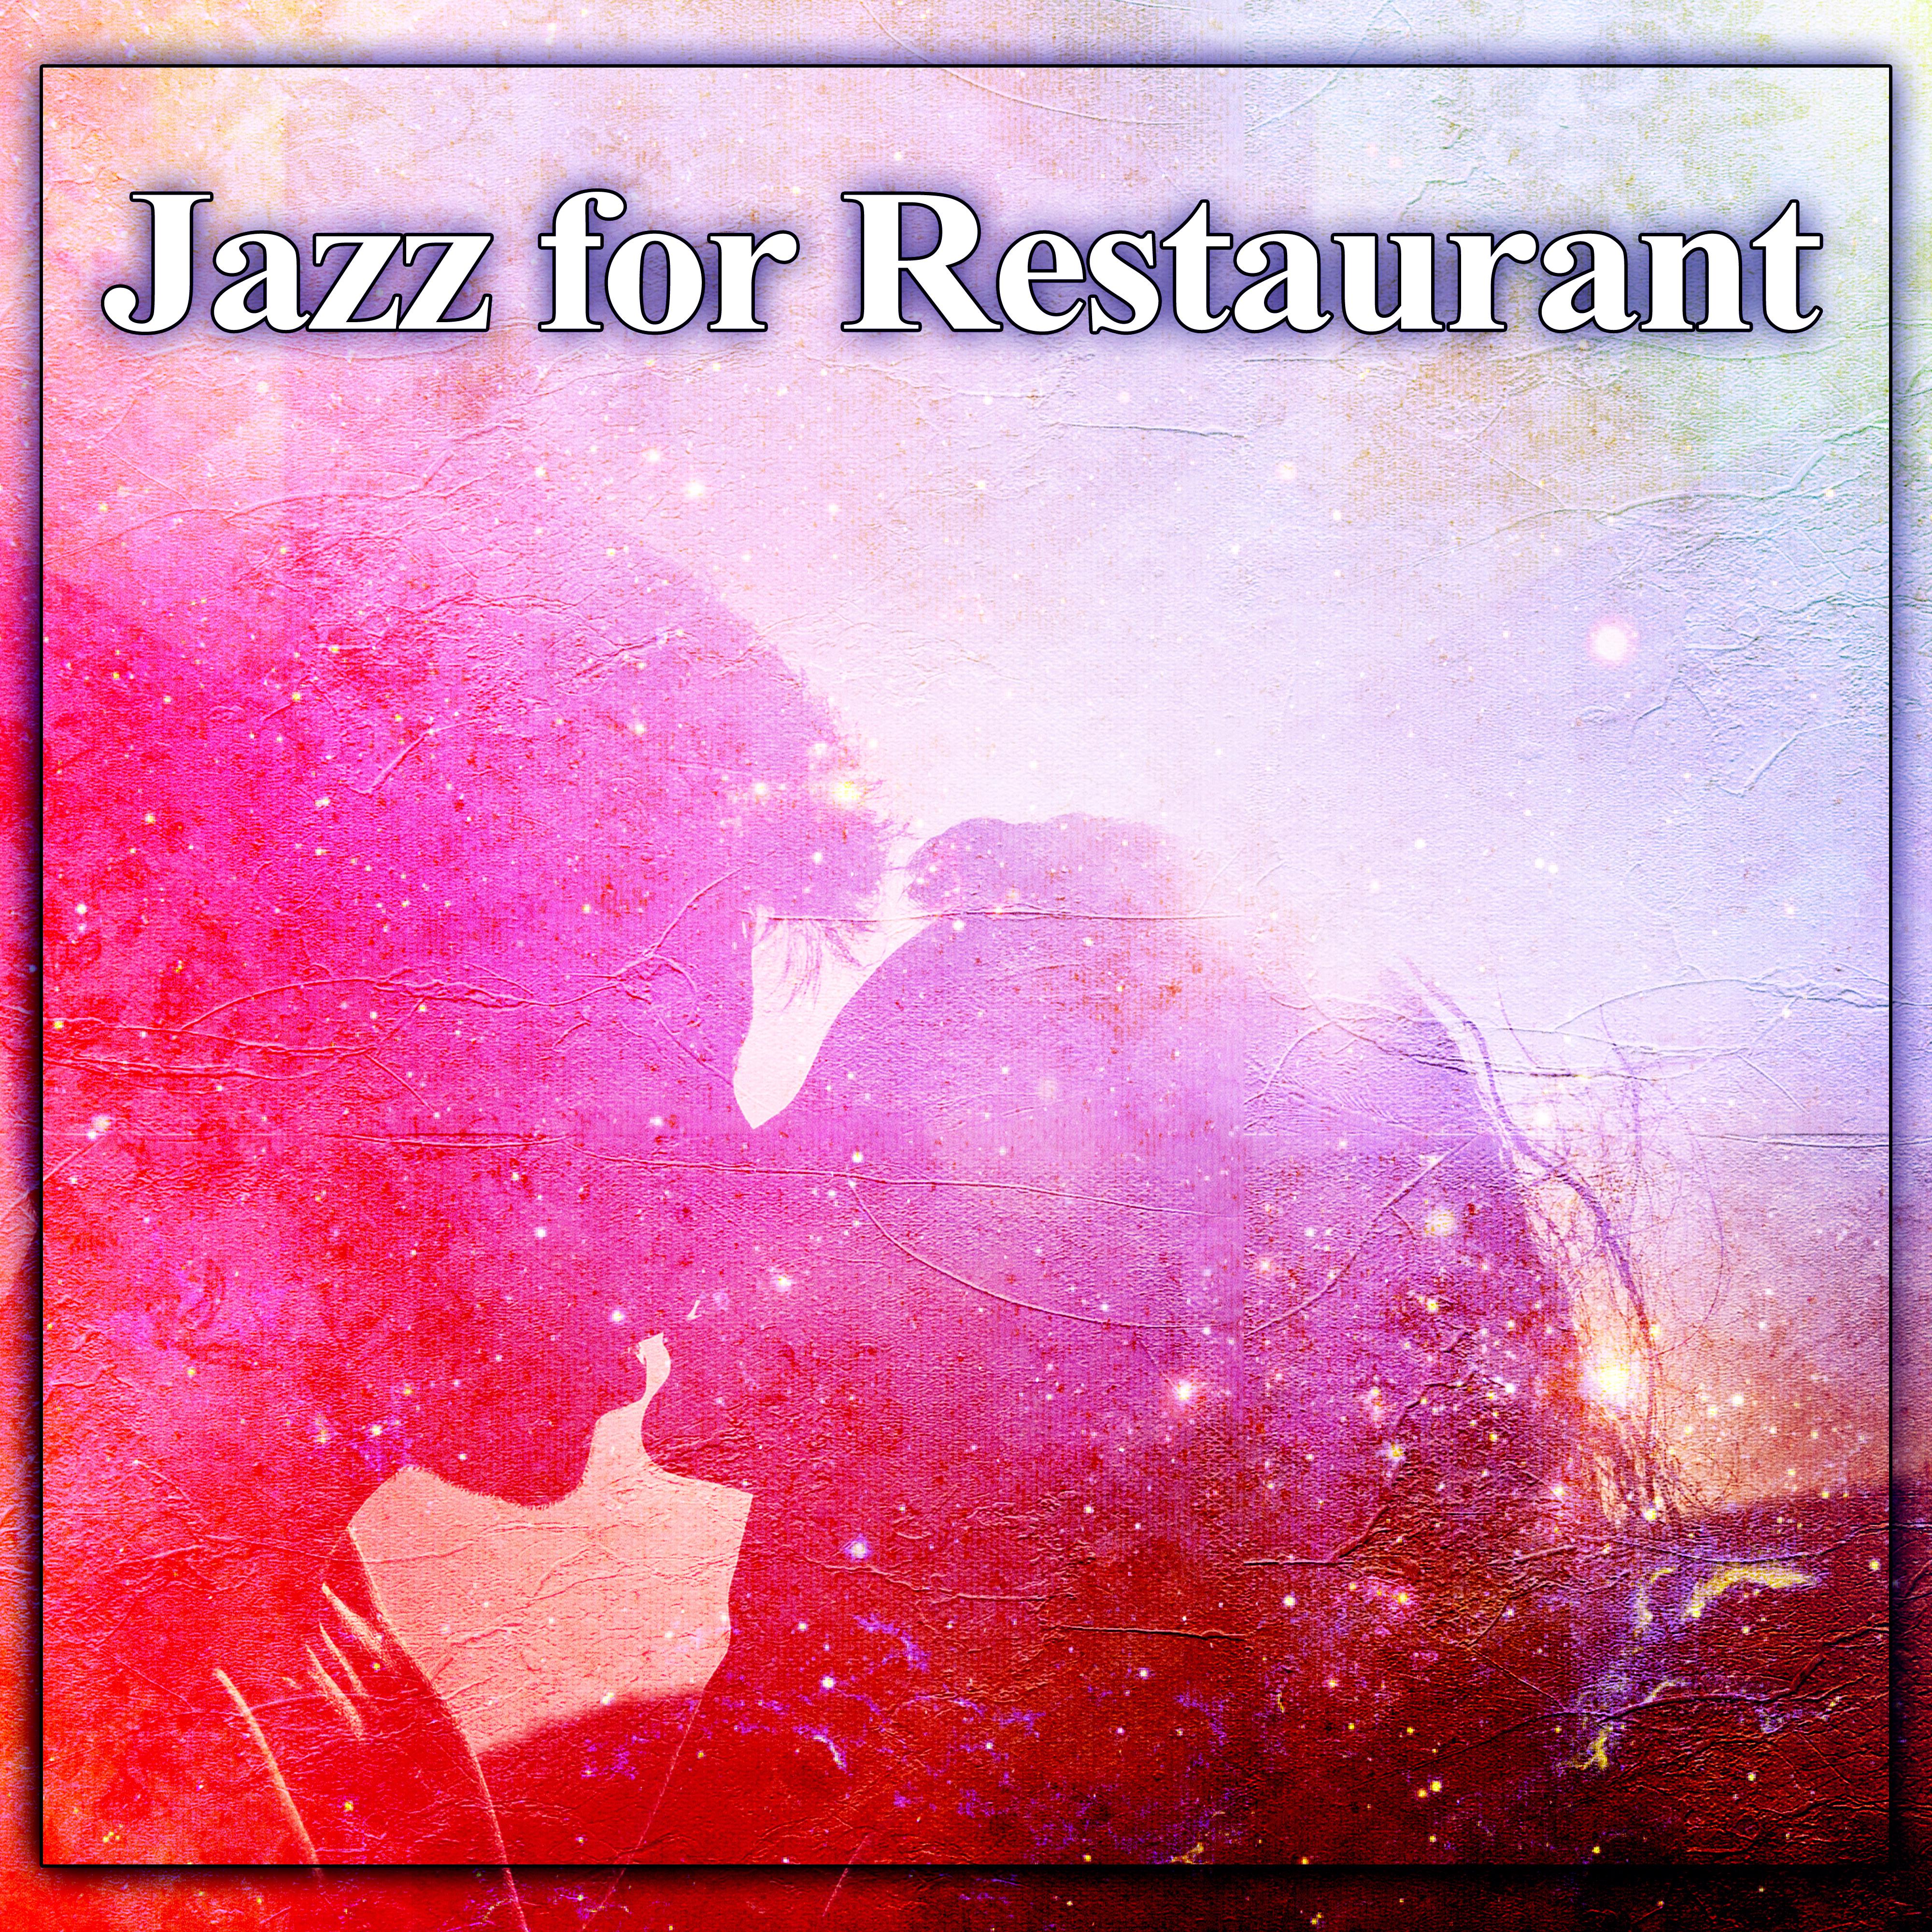 Jazz for Restaurant – Gentle Sounds for Restaurant, Music for Background, Romantic Dinner, Fmily Dinner, Background Jazz Music for Restaurant